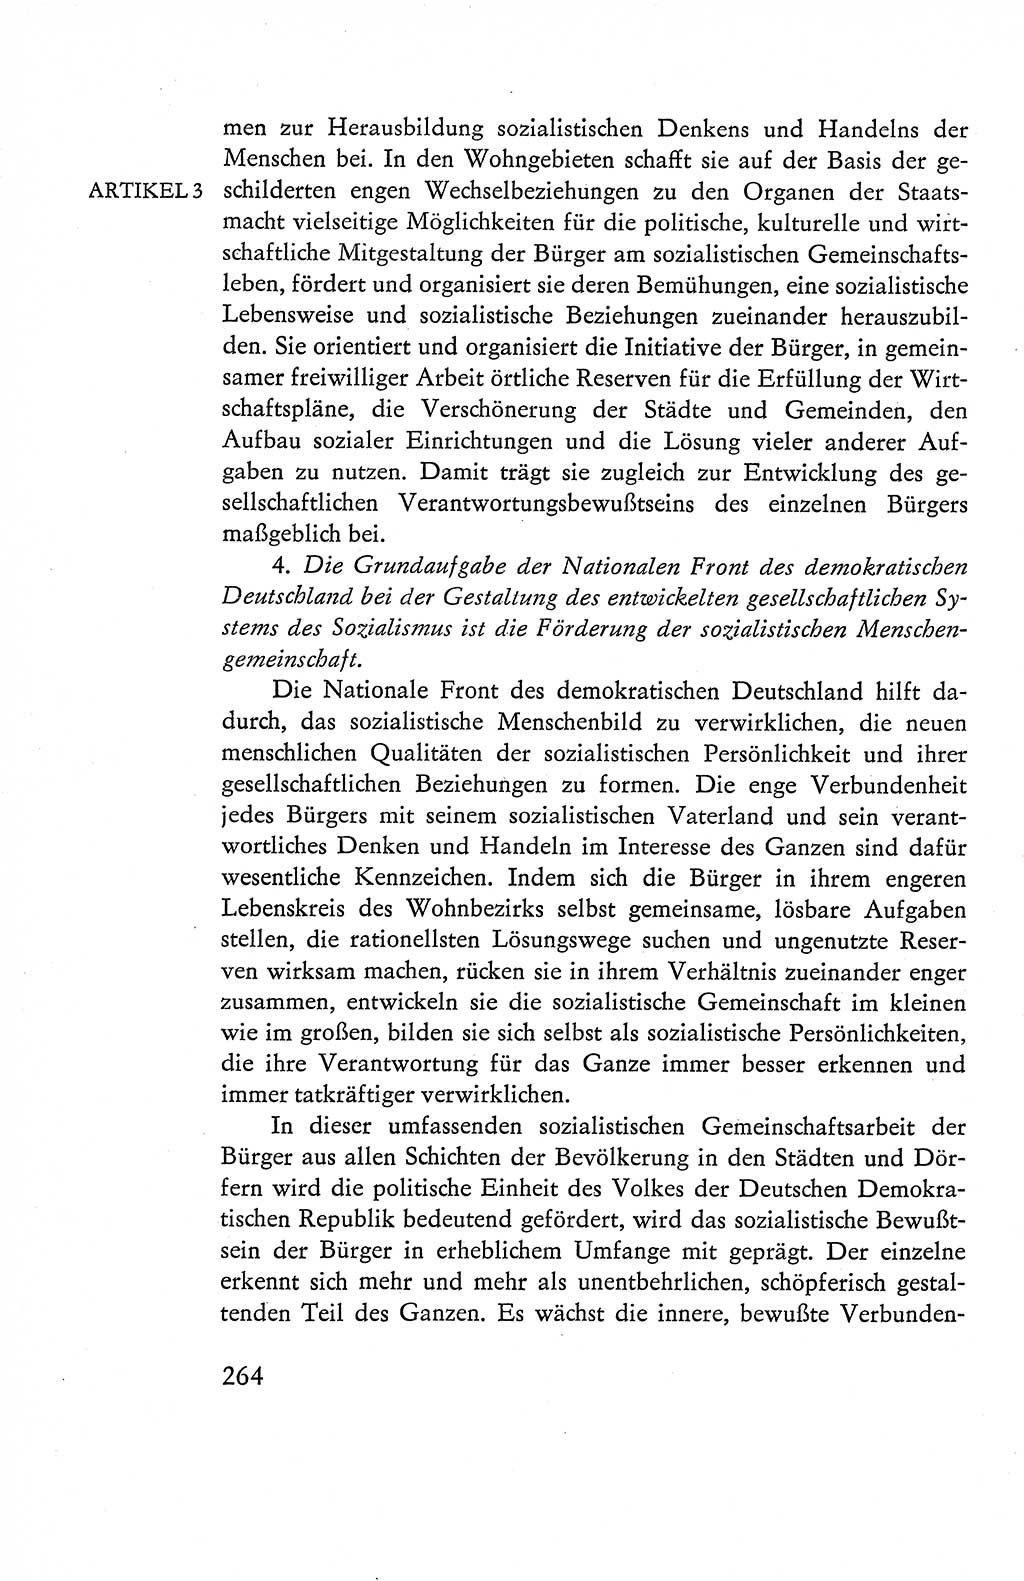 Verfassung der Deutschen Demokratischen Republik (DDR), Dokumente, Kommentar 1969, Band 1, Seite 264 (Verf. DDR Dok. Komm. 1969, Bd. 1, S. 264)